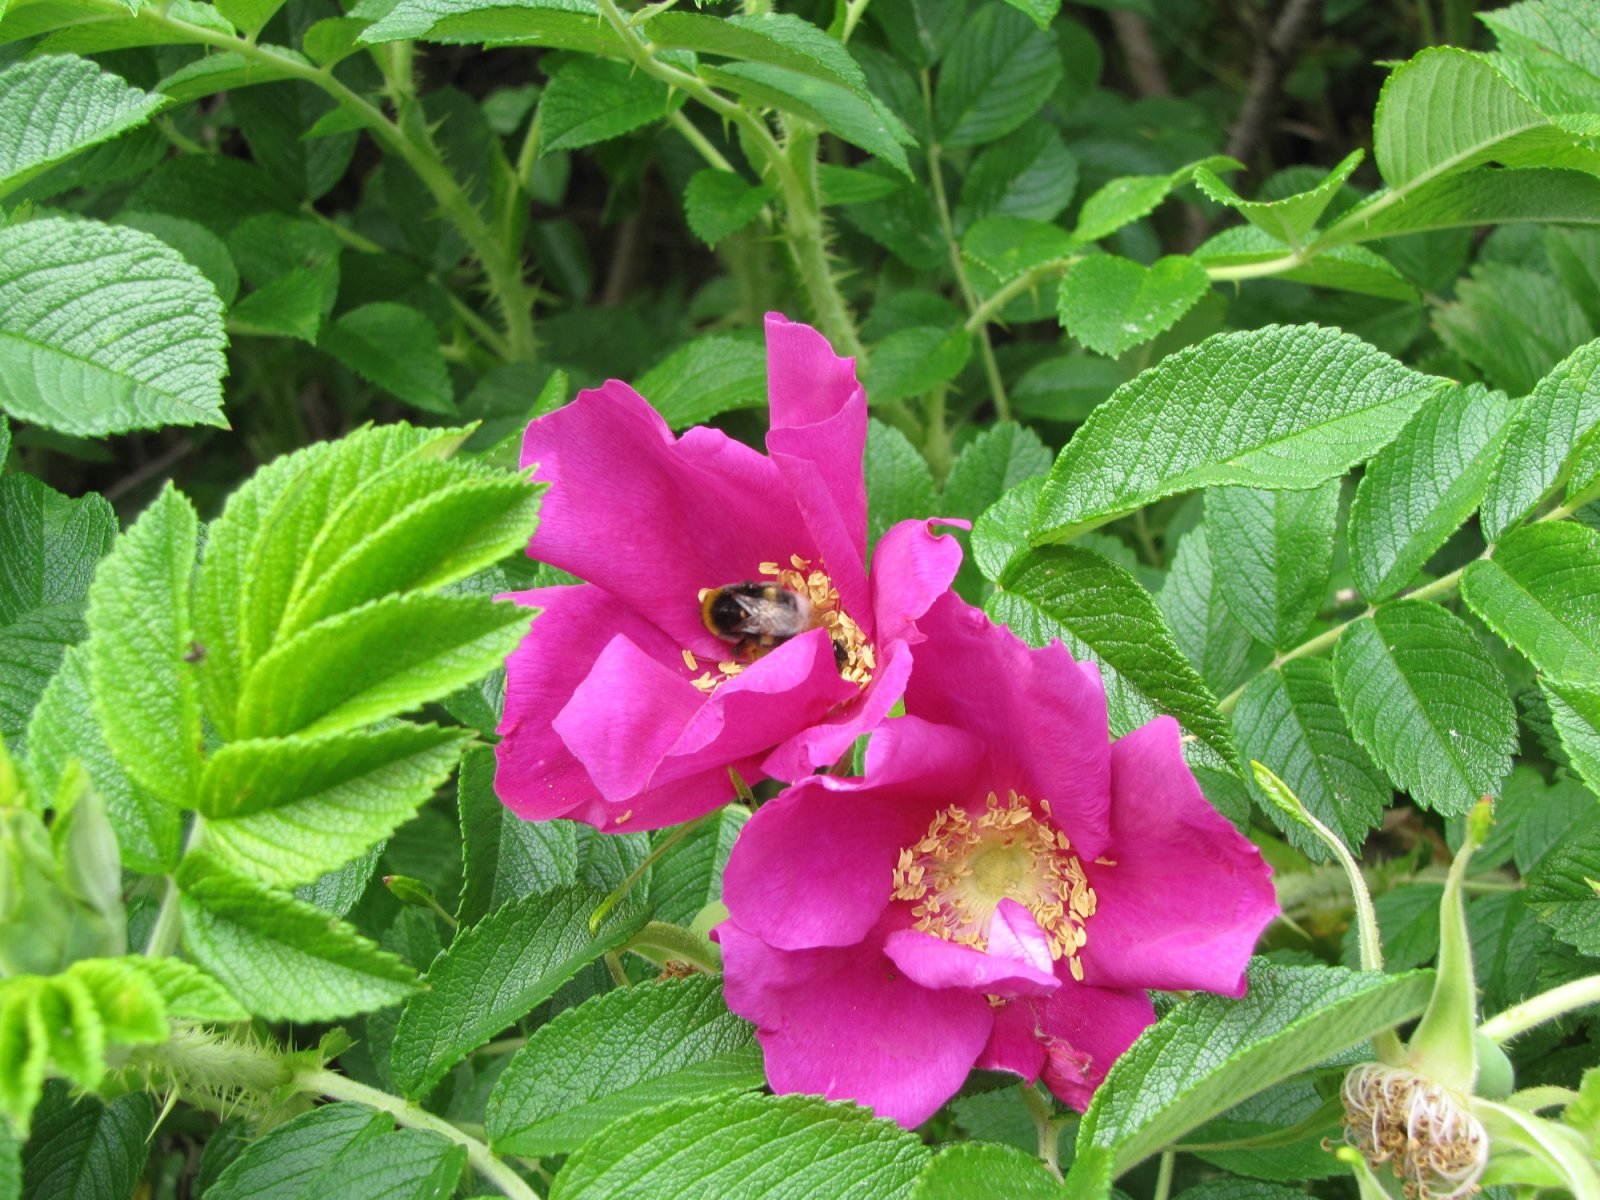 Jaunķemeru piekrastē sastopamā invazīvā suga - krokainā roze